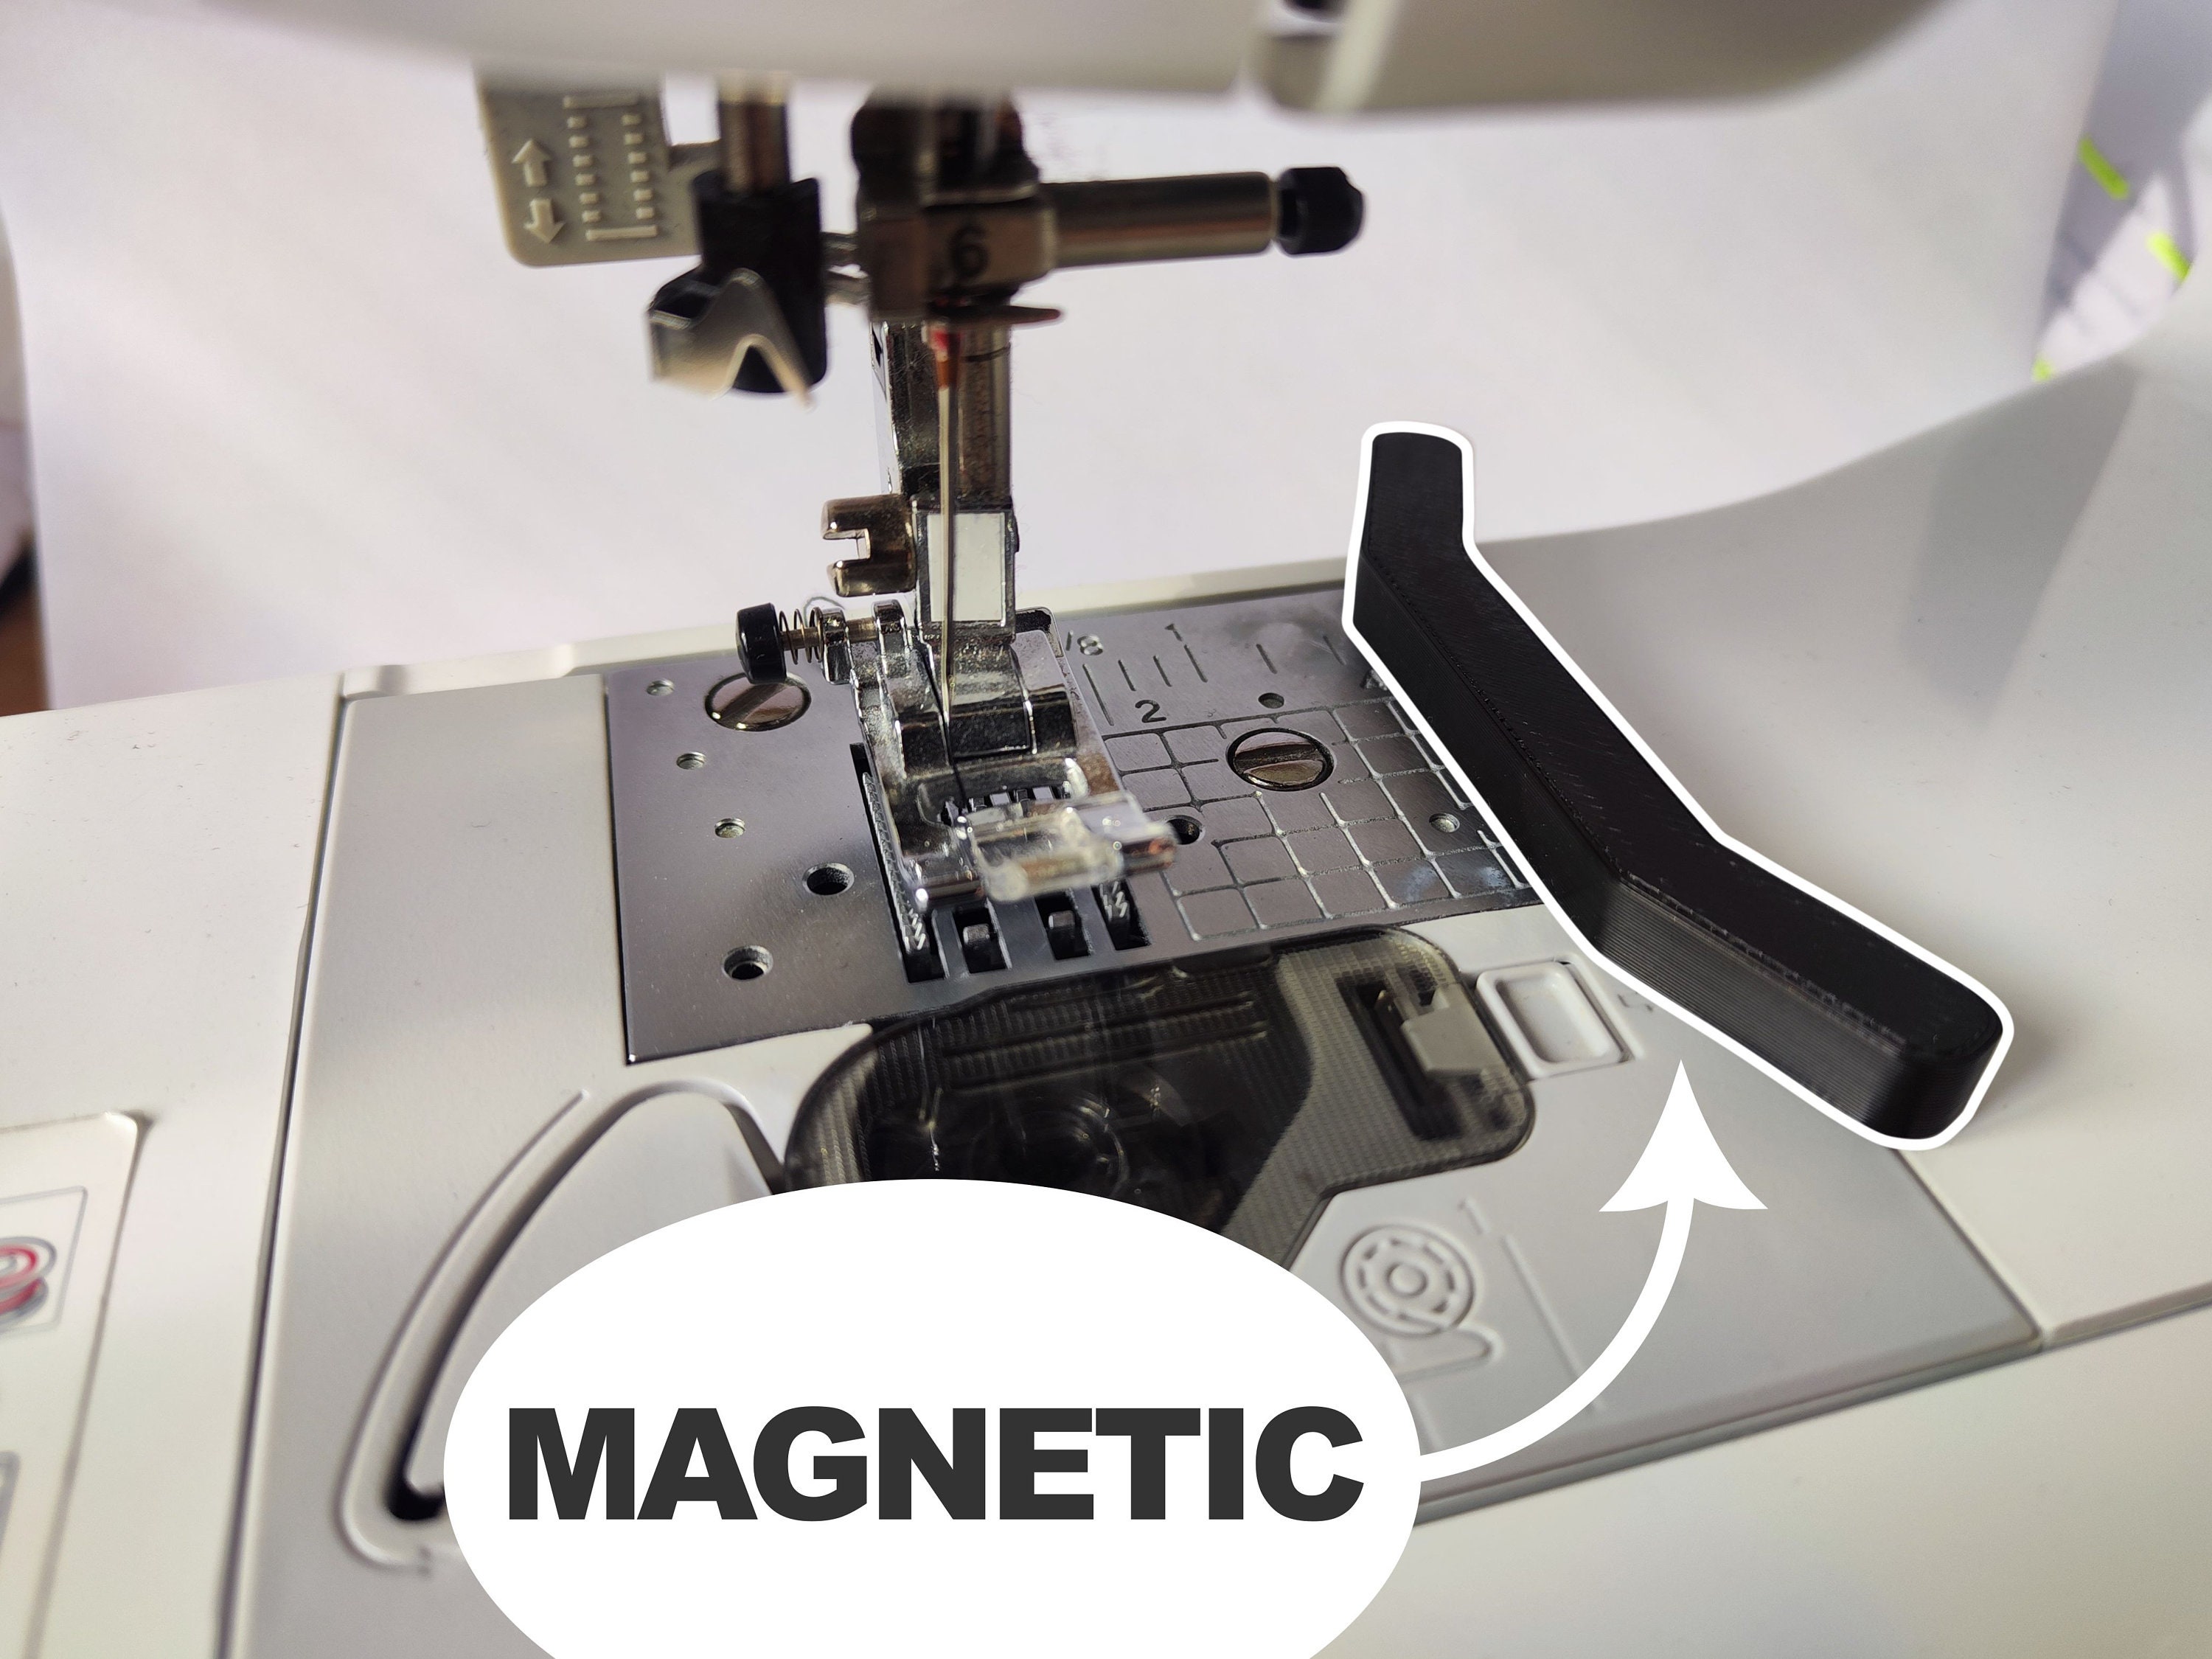 Magnetic Seam Guides 3.7 X 2 X 0.9cm 1.5 X 0.8 X 0.4in Sewing Machine,  Zipper, Tape Measure 